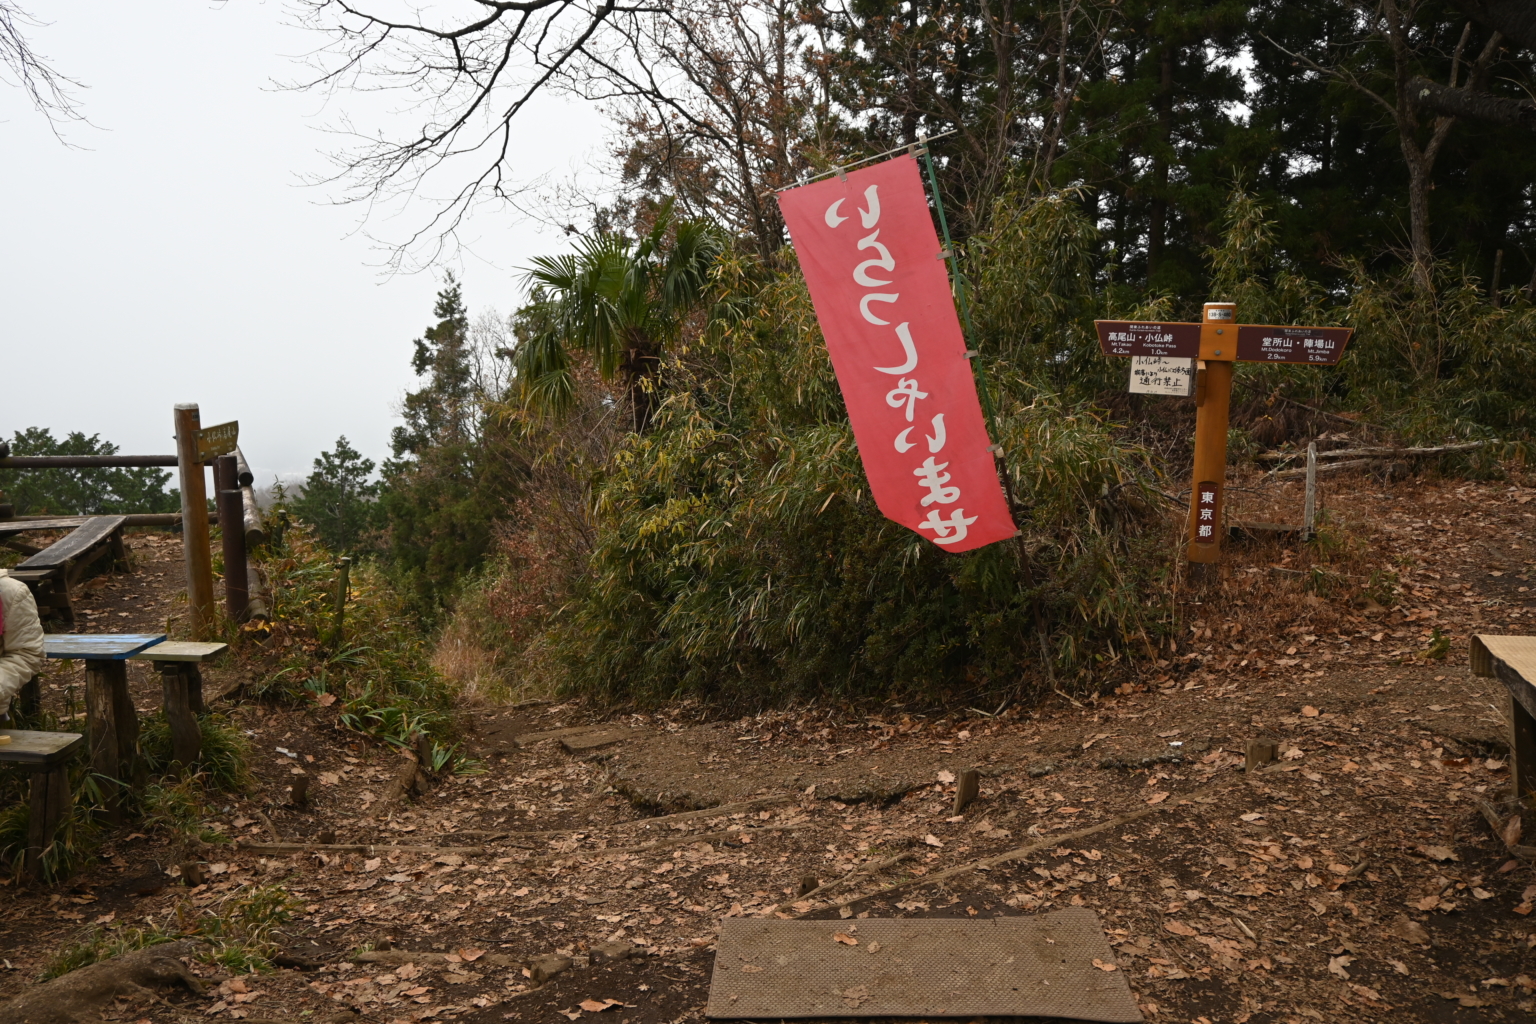 ダイヤモンド富士を楽しみに奥高尾縦走コースを歩く【景信山から一丁平へ】 山歩きnavi